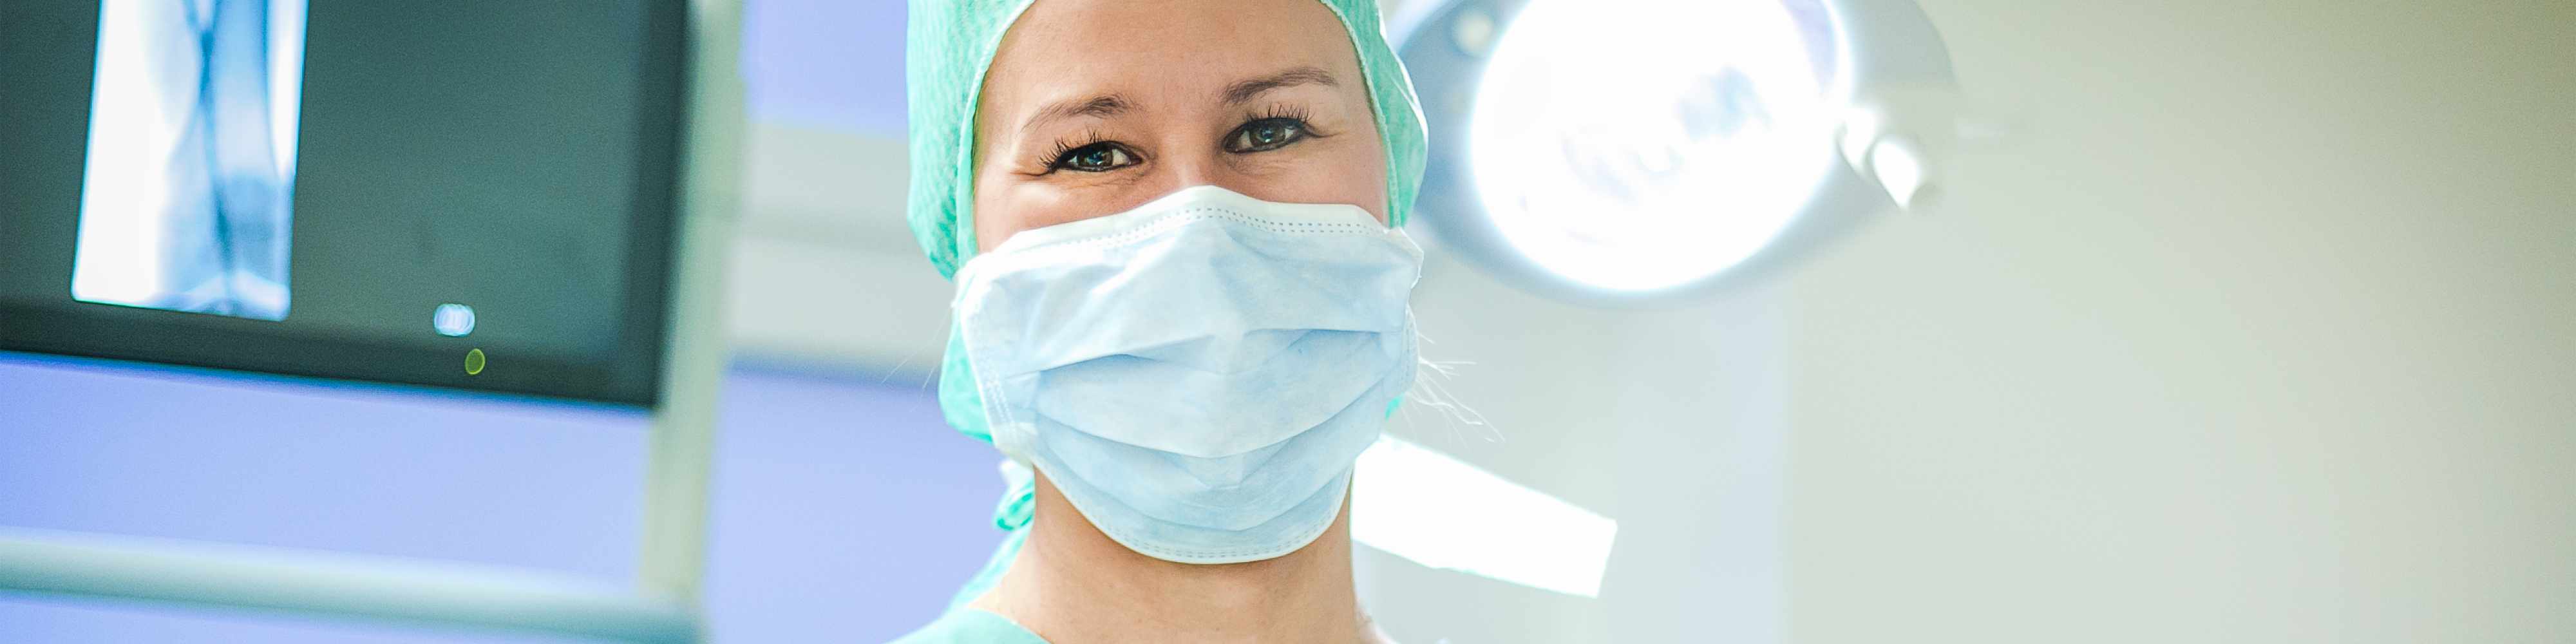 Anästhesietechnischer Assistentin Teilzeit für die Anästhesieabteilung  (m/w/d)